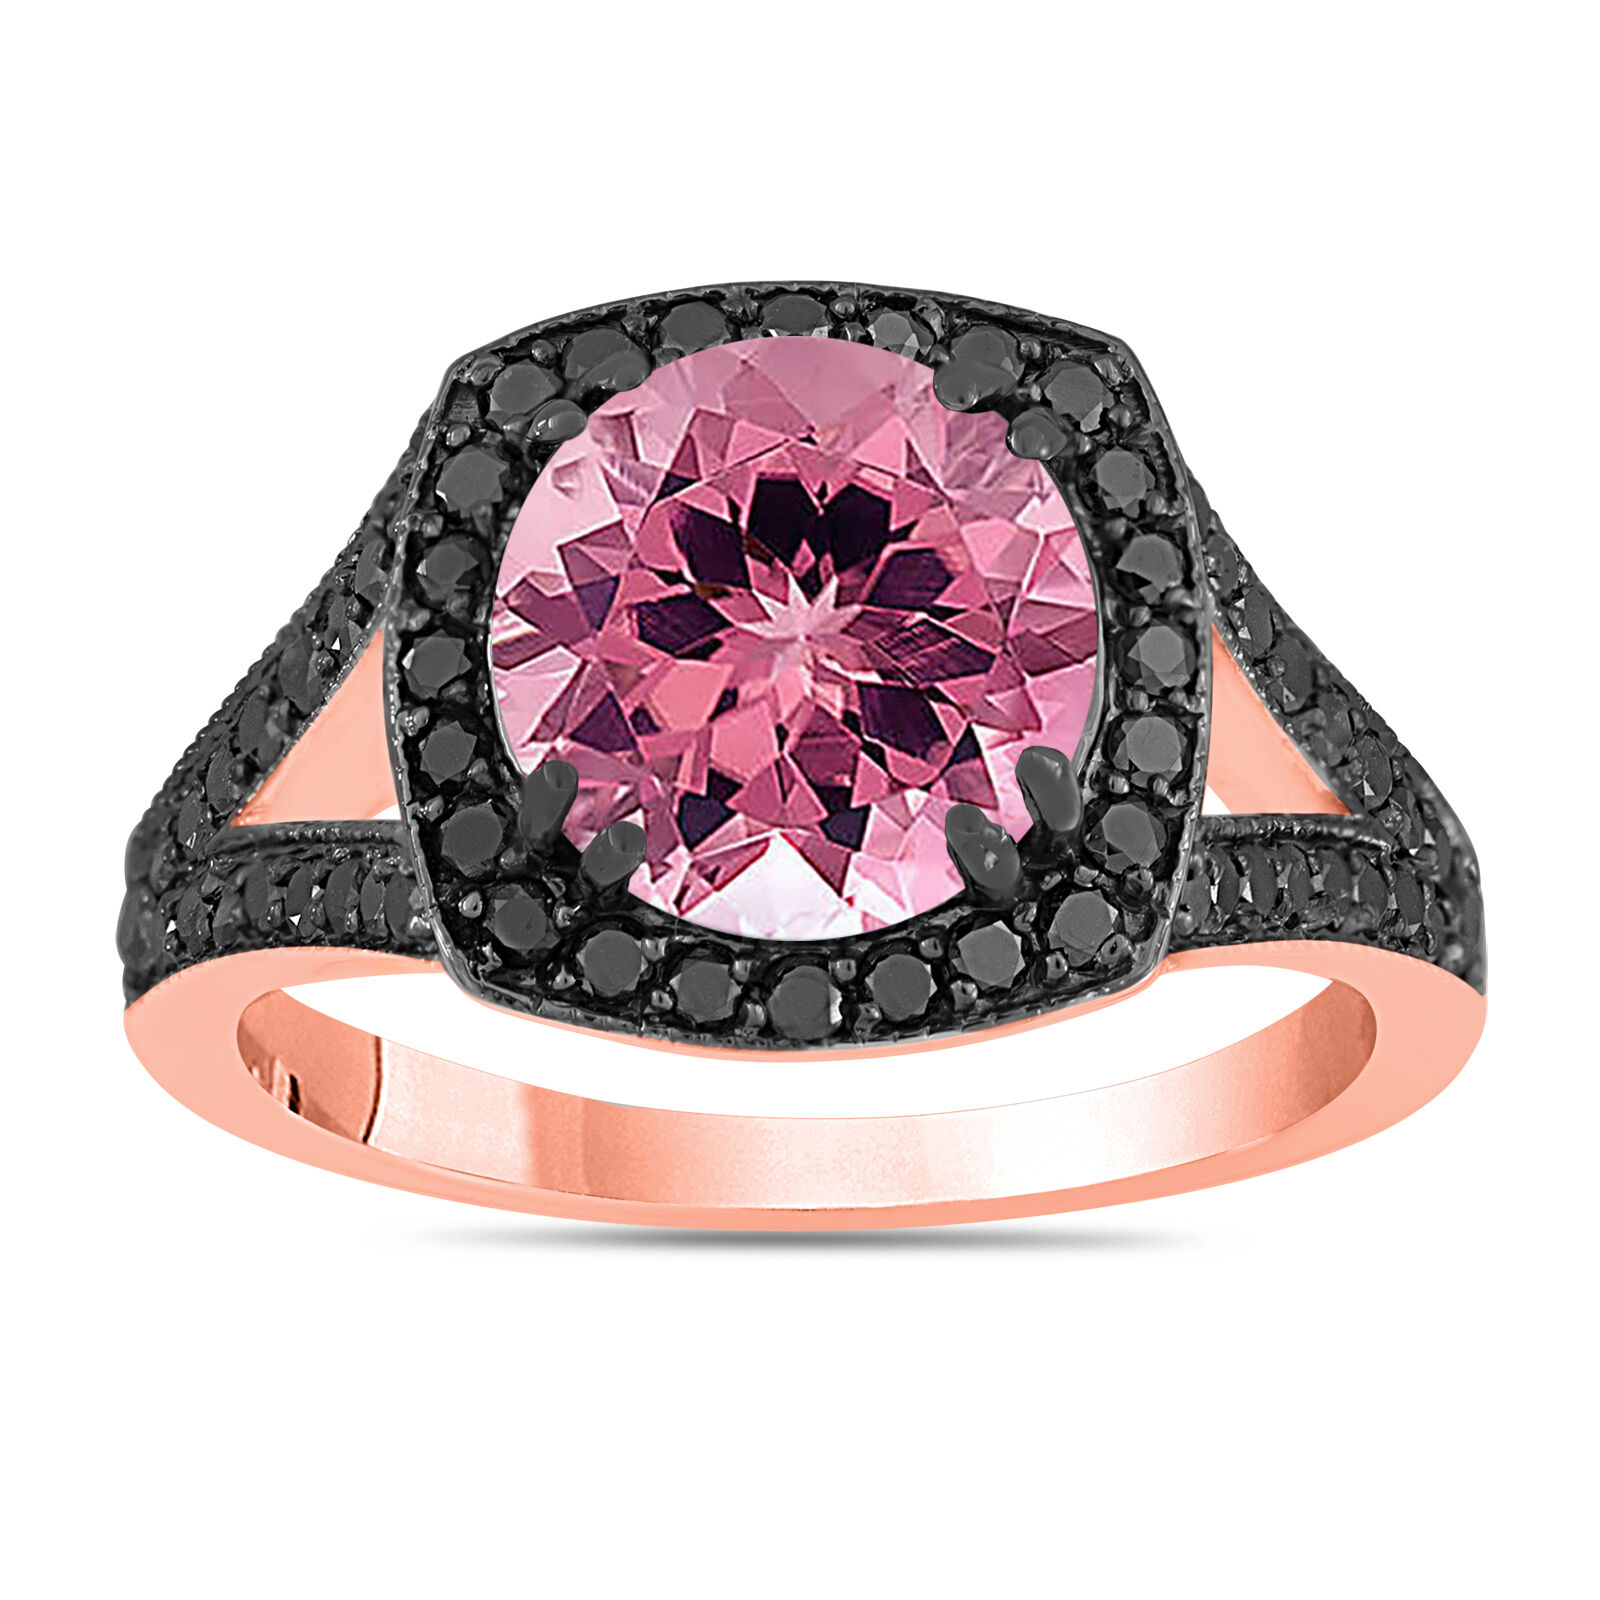 3.24 Carat Pink Tourmaline Engagement Ring Wedding Ring 14k Rose Gold Pave Halo